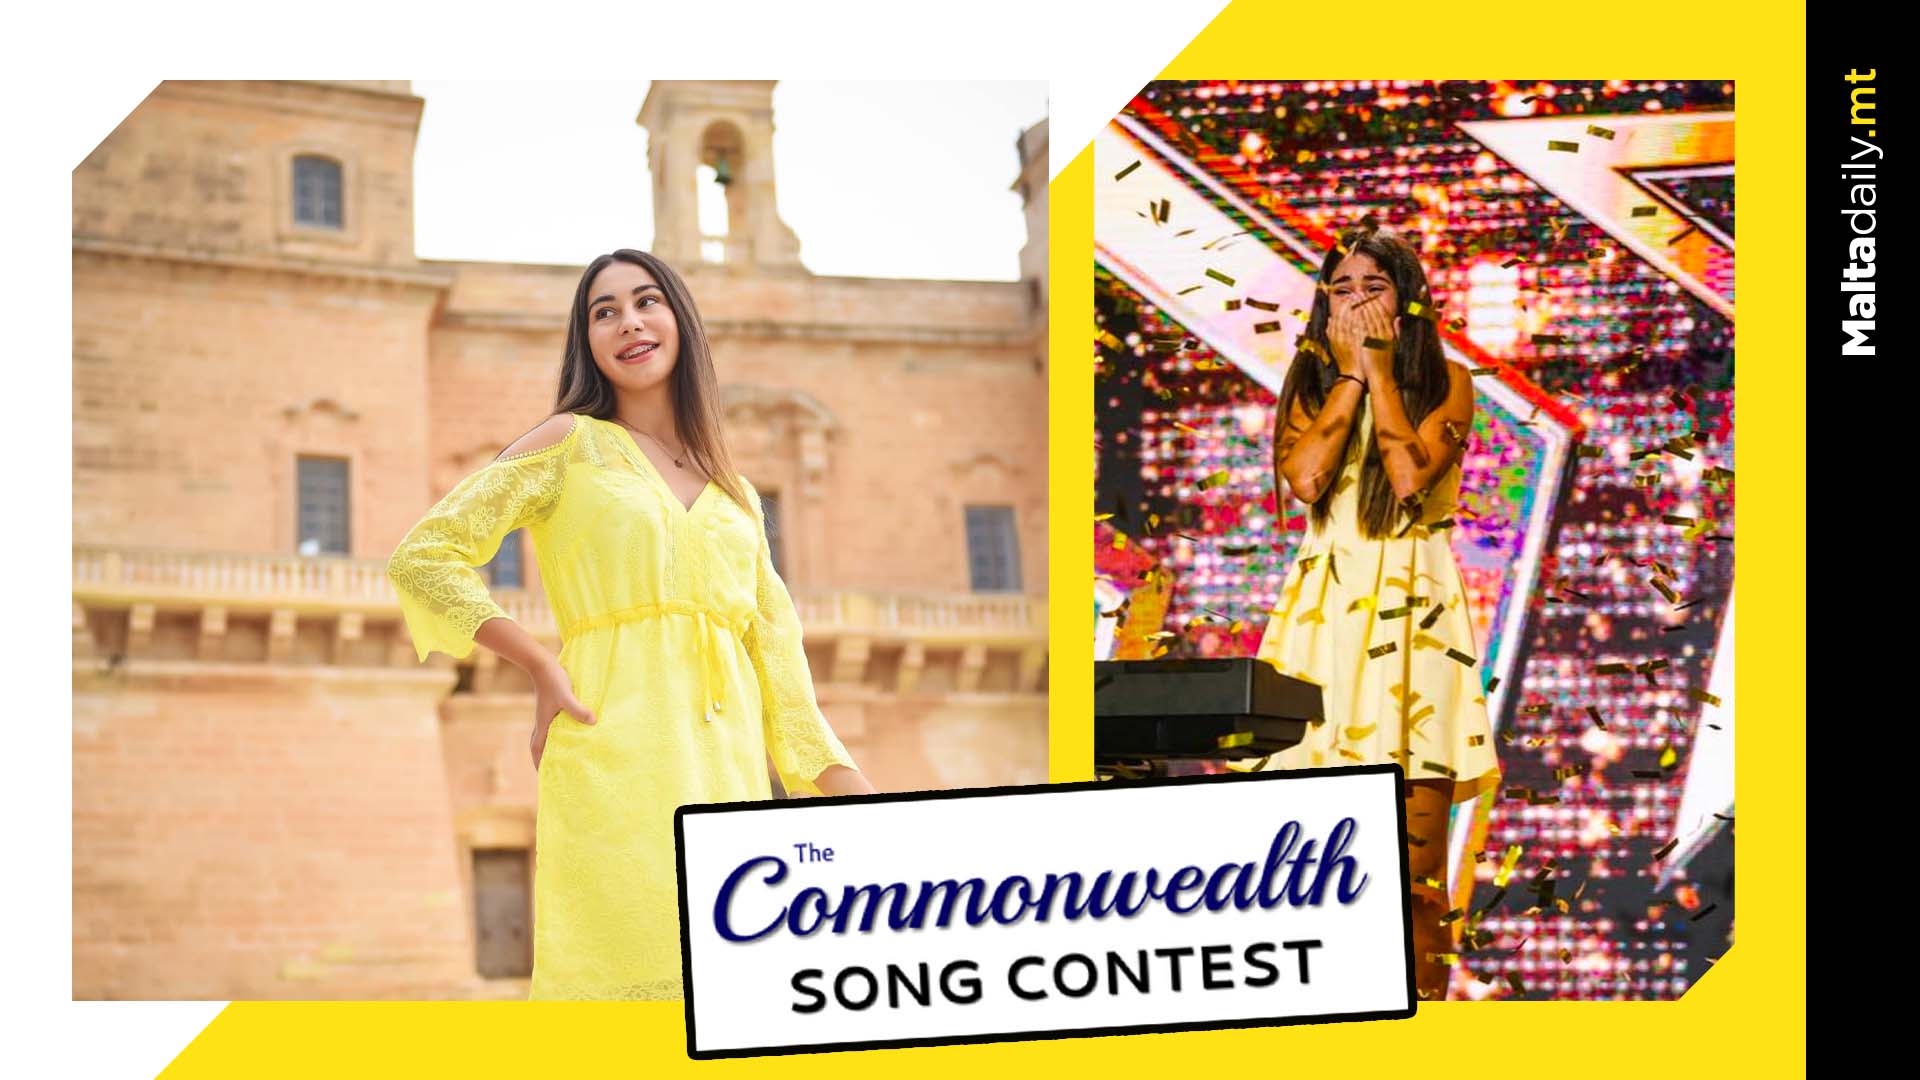 Emma Cutajar to represent Malta in Commonwealth Song Contest